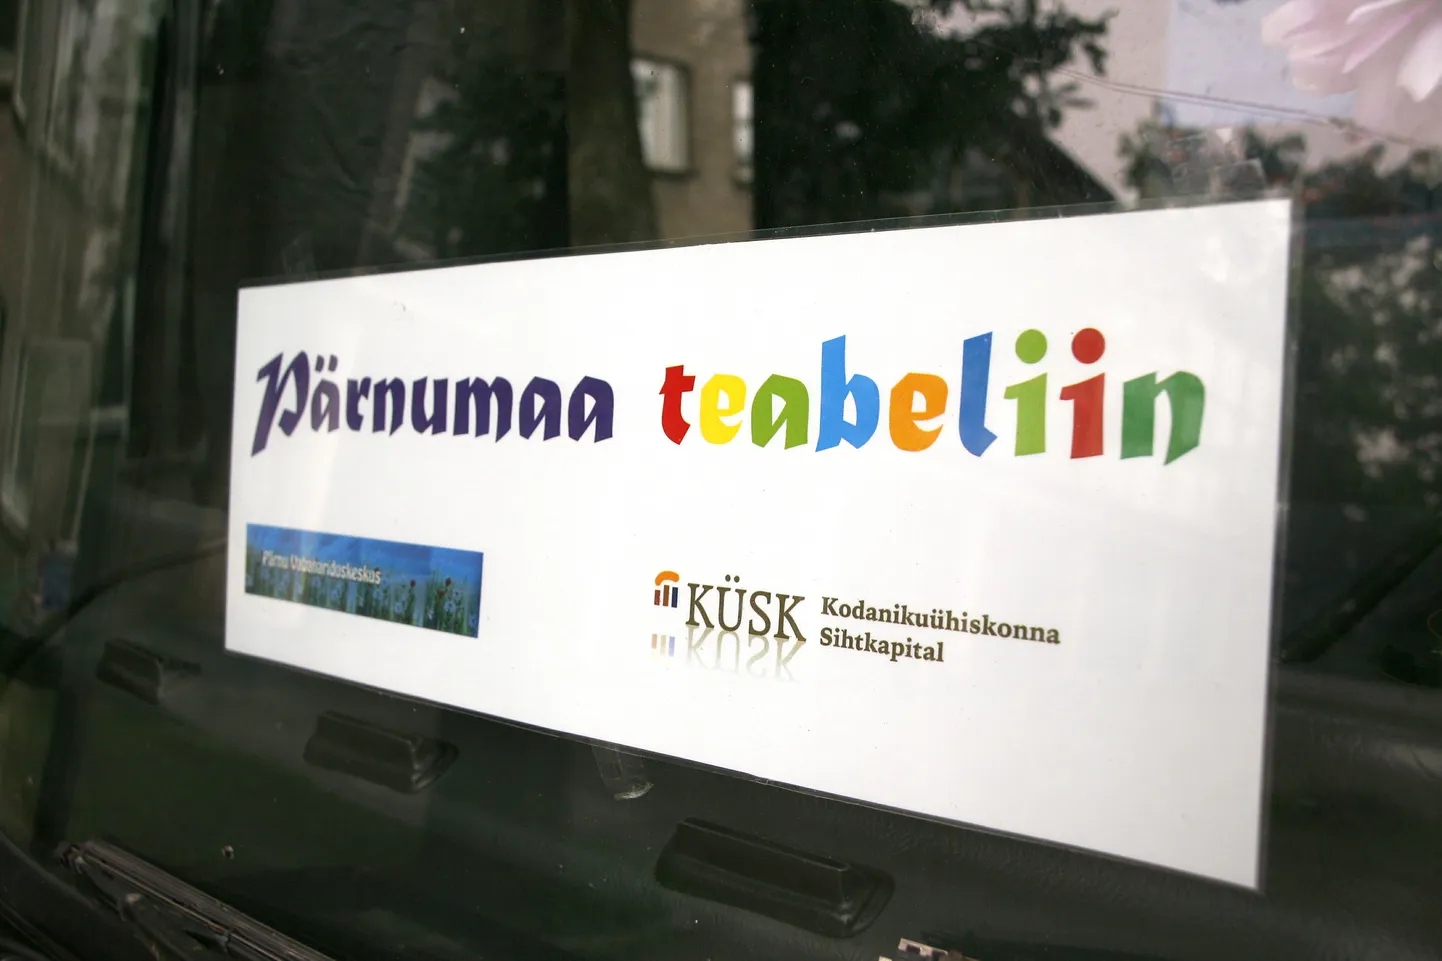 Pärnumaa teabeliini logo.